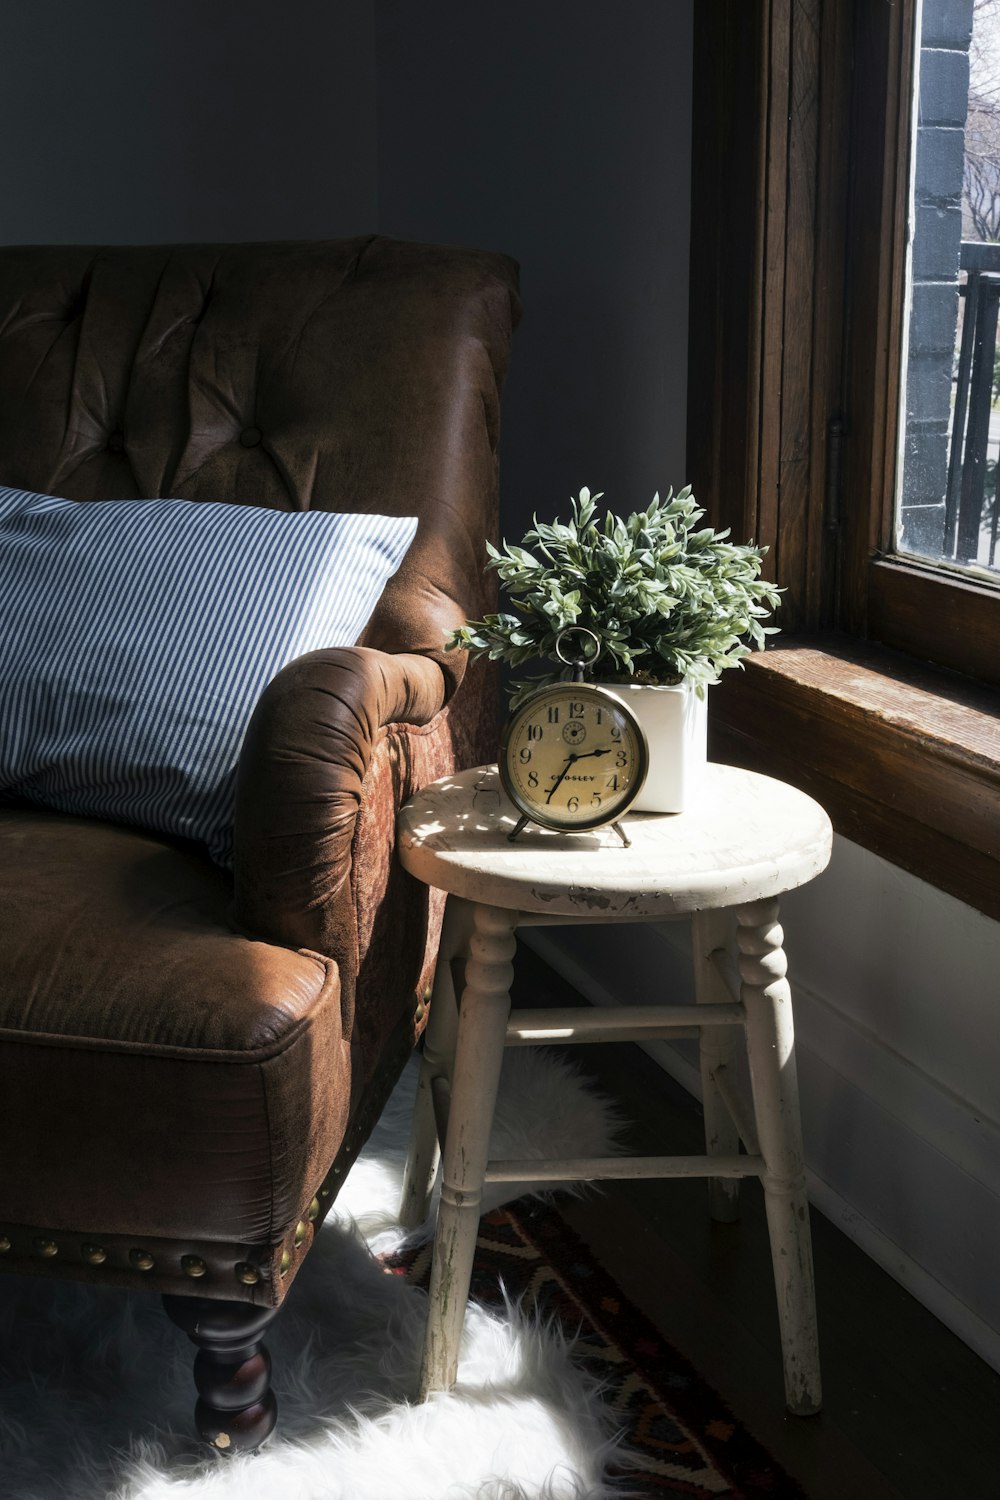 fauteuil canapé rembourré en cuir marron à côté d’une chaise tabouret en bois blanc avec horloge analogique ronde en métal gris